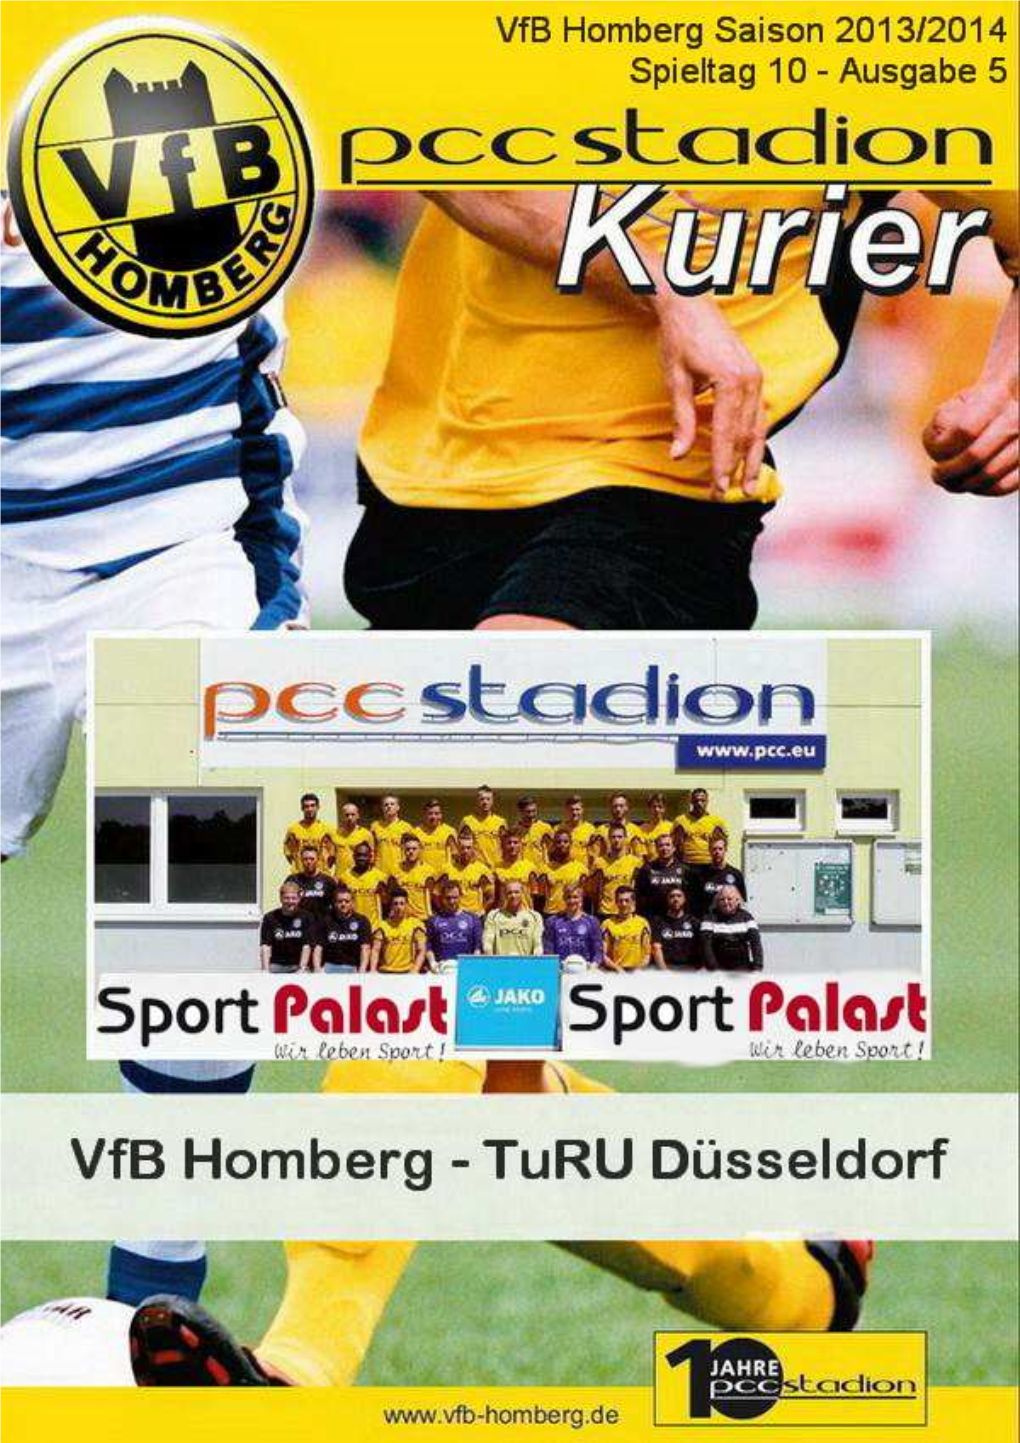 Vfb Homberg Kurier 20132014 05 Hp.Pub